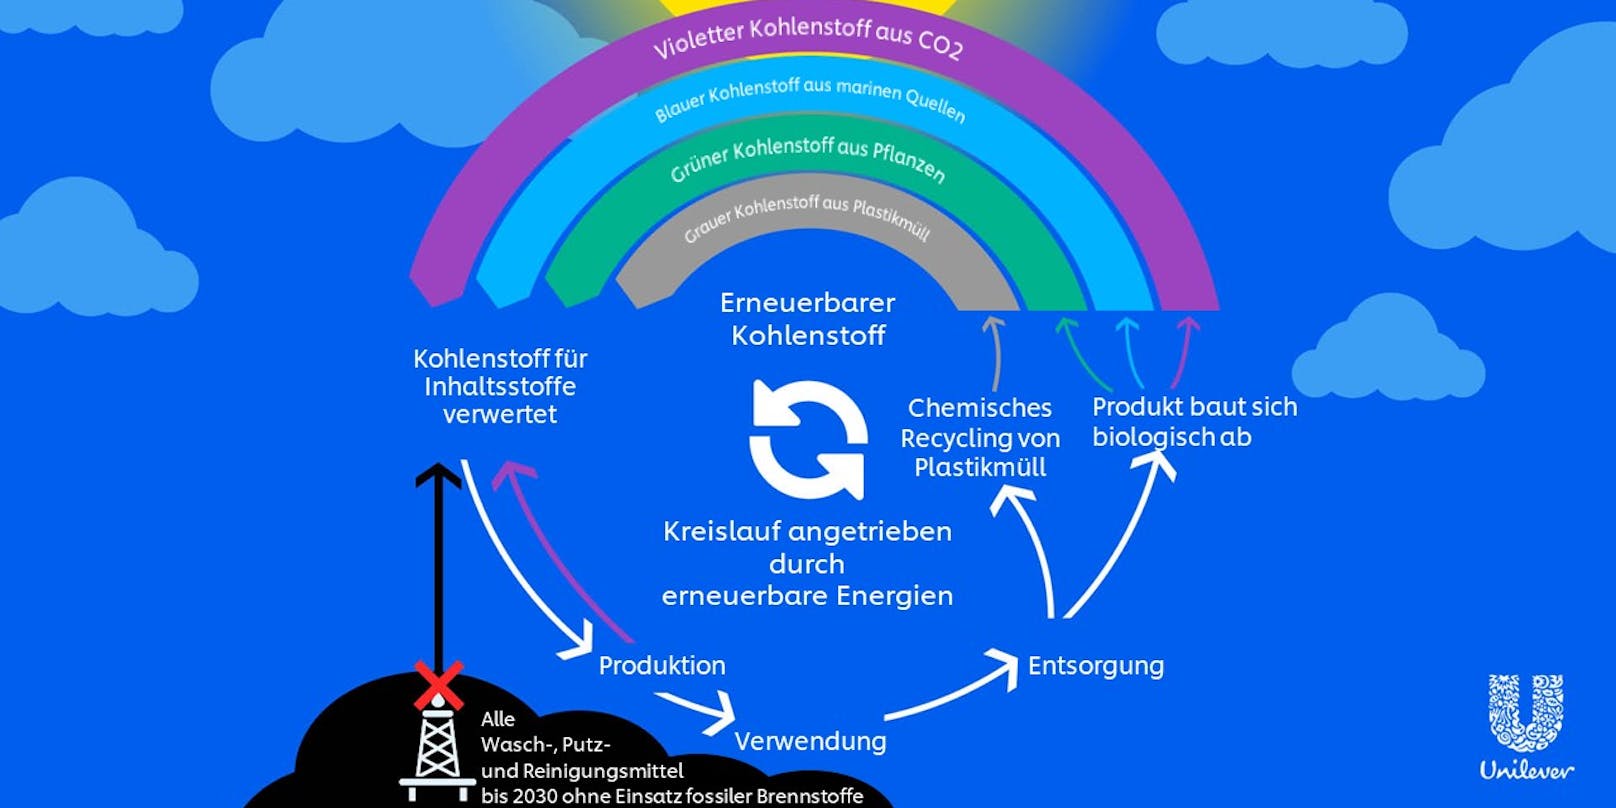 Projekt "Kohlenstoff-Regenbogen": Unilever will bei Rohstoffen nicht erneuerbare durch andere, umweltfreundliche Kohlenstoffquellen ersetzen&nbsp;